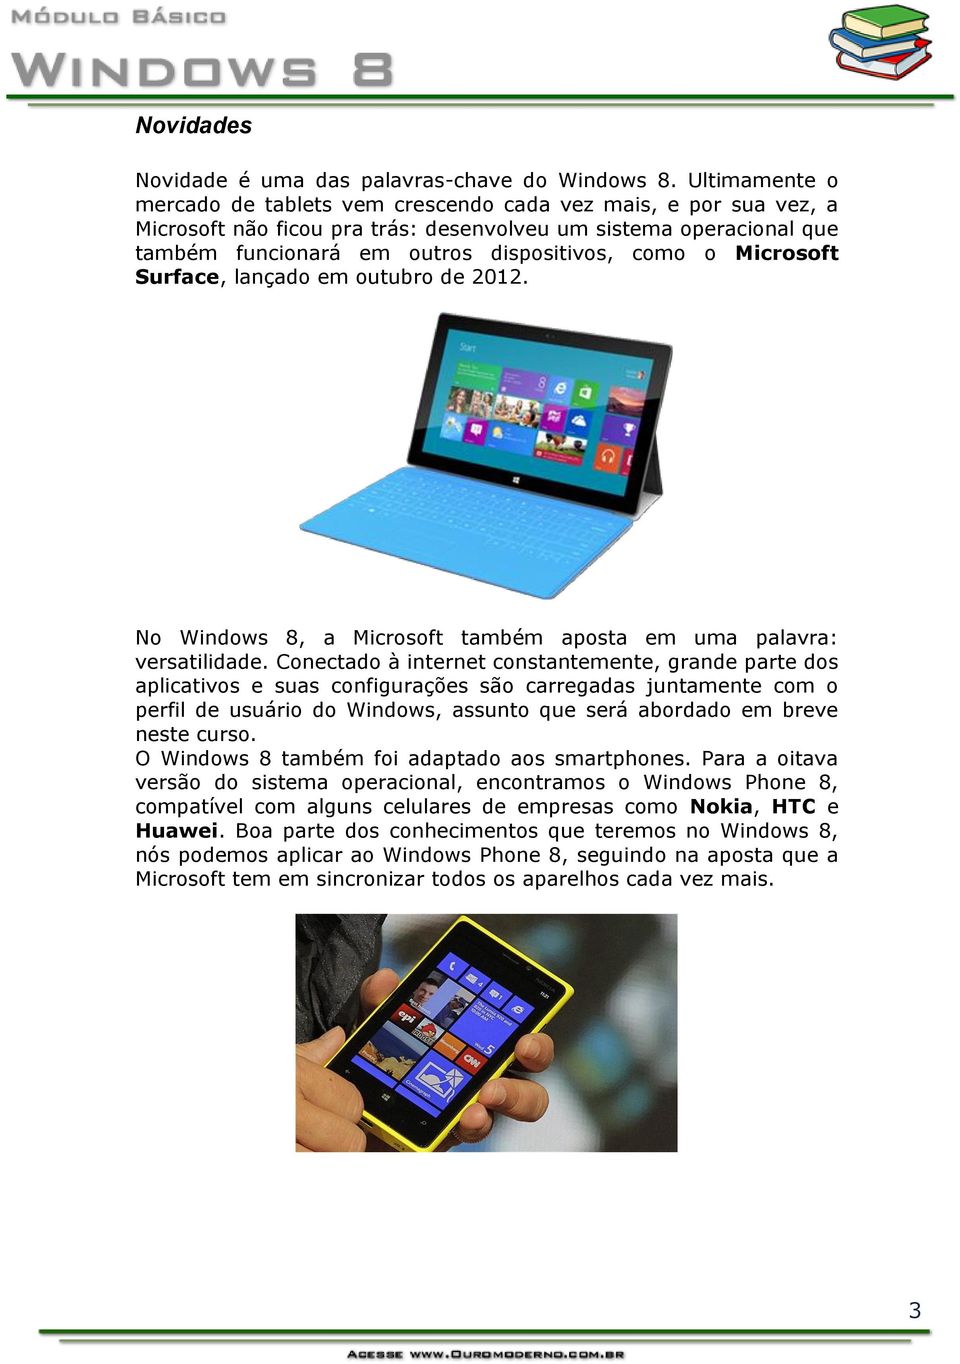 Microsoft Surface, lançado em outubro de 2012. No Windows 8, a Microsoft também aposta em uma palavra: versatilidade.